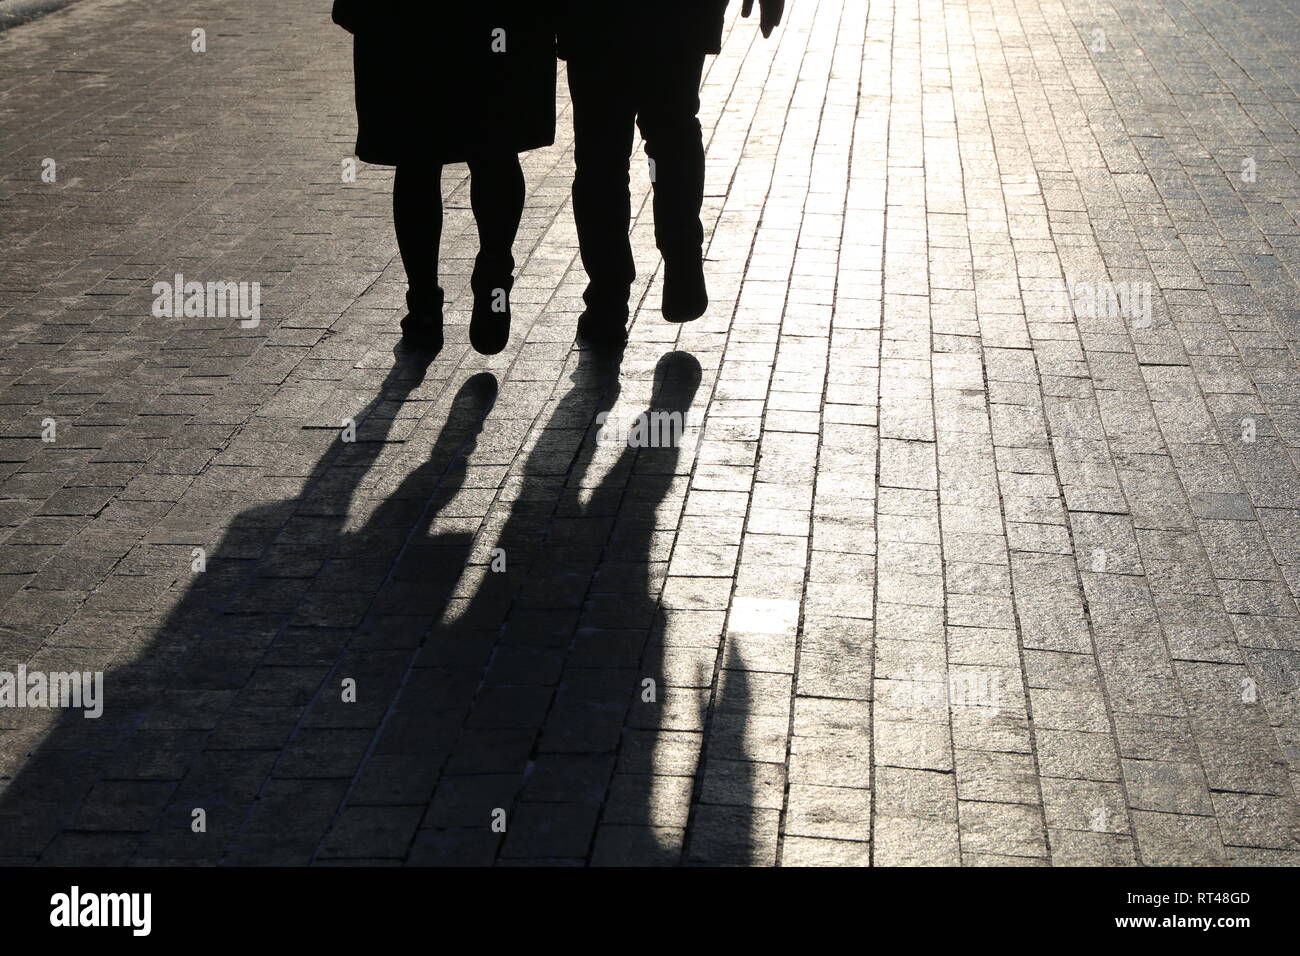 La gente che camminava per strada, le sagome di nero e le ombre sul marciapiede pedonale. Concetto di vita di città, i forestieri, storie drammatiche Foto Stock